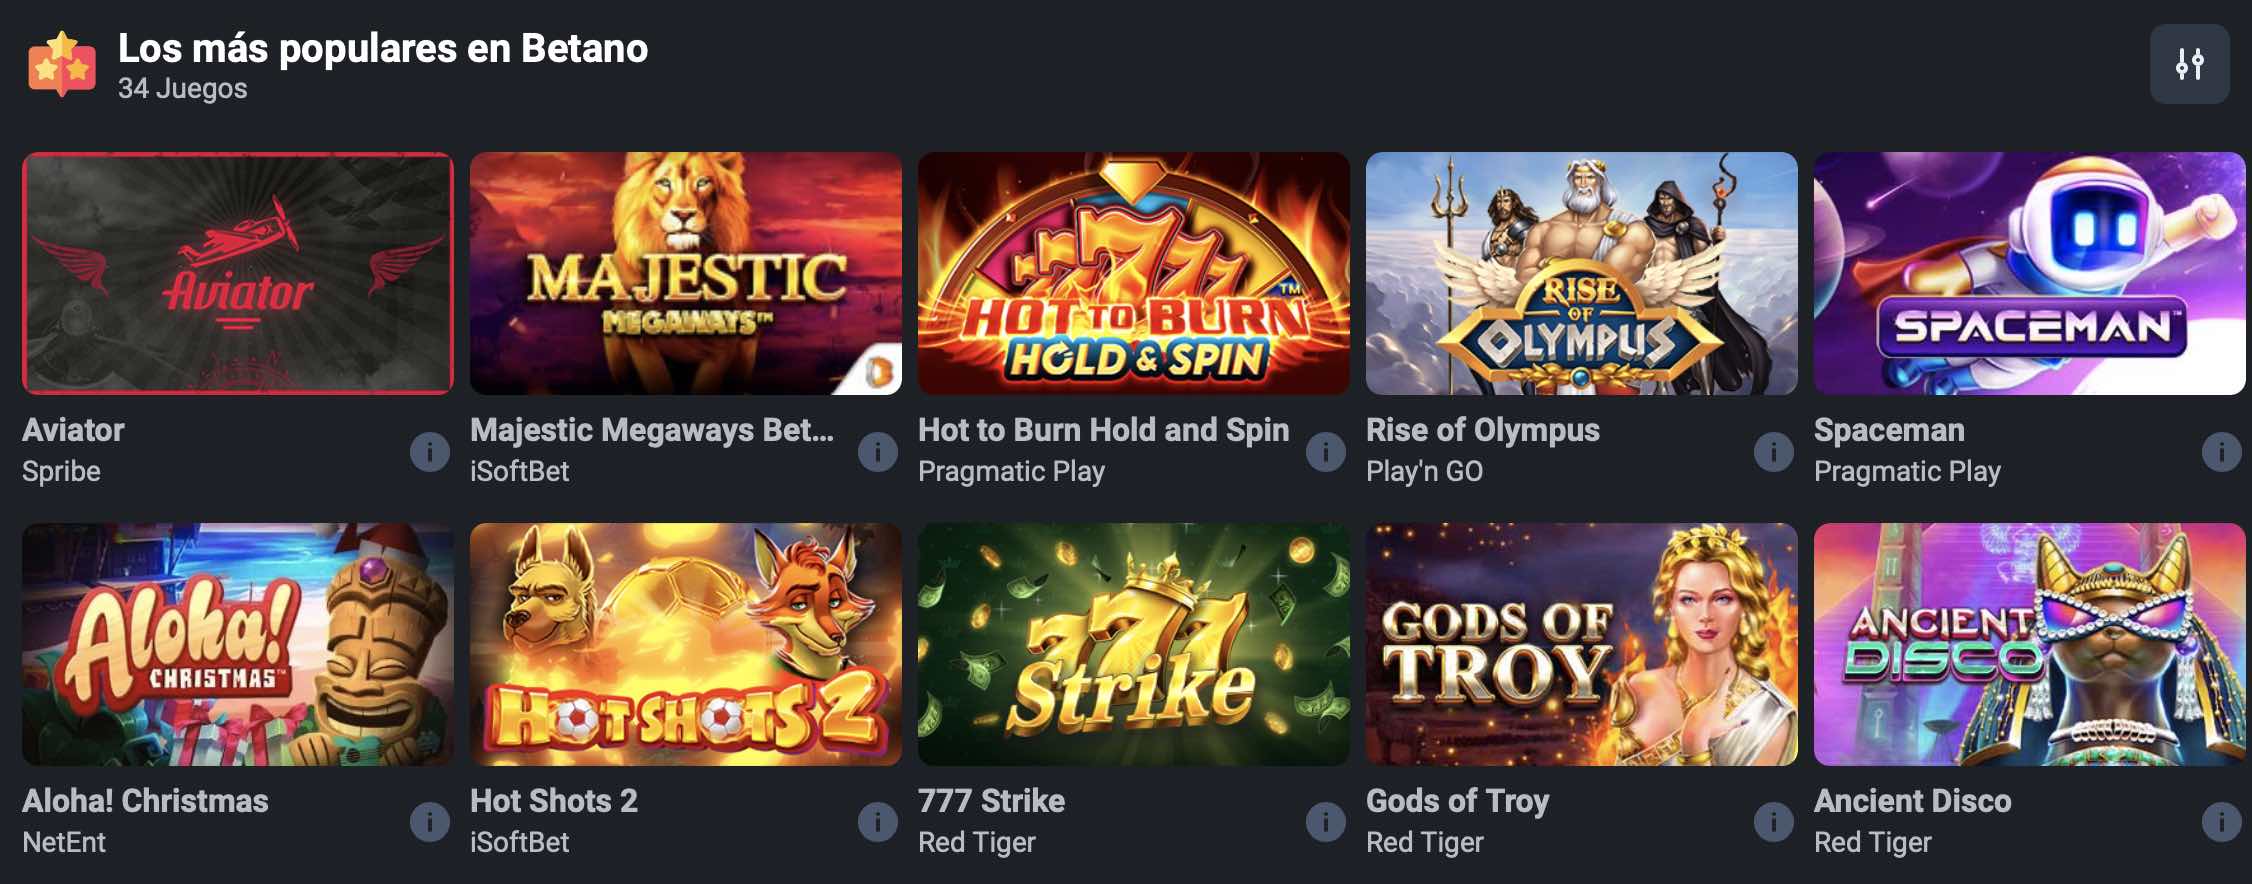 juegos populares en betano casino